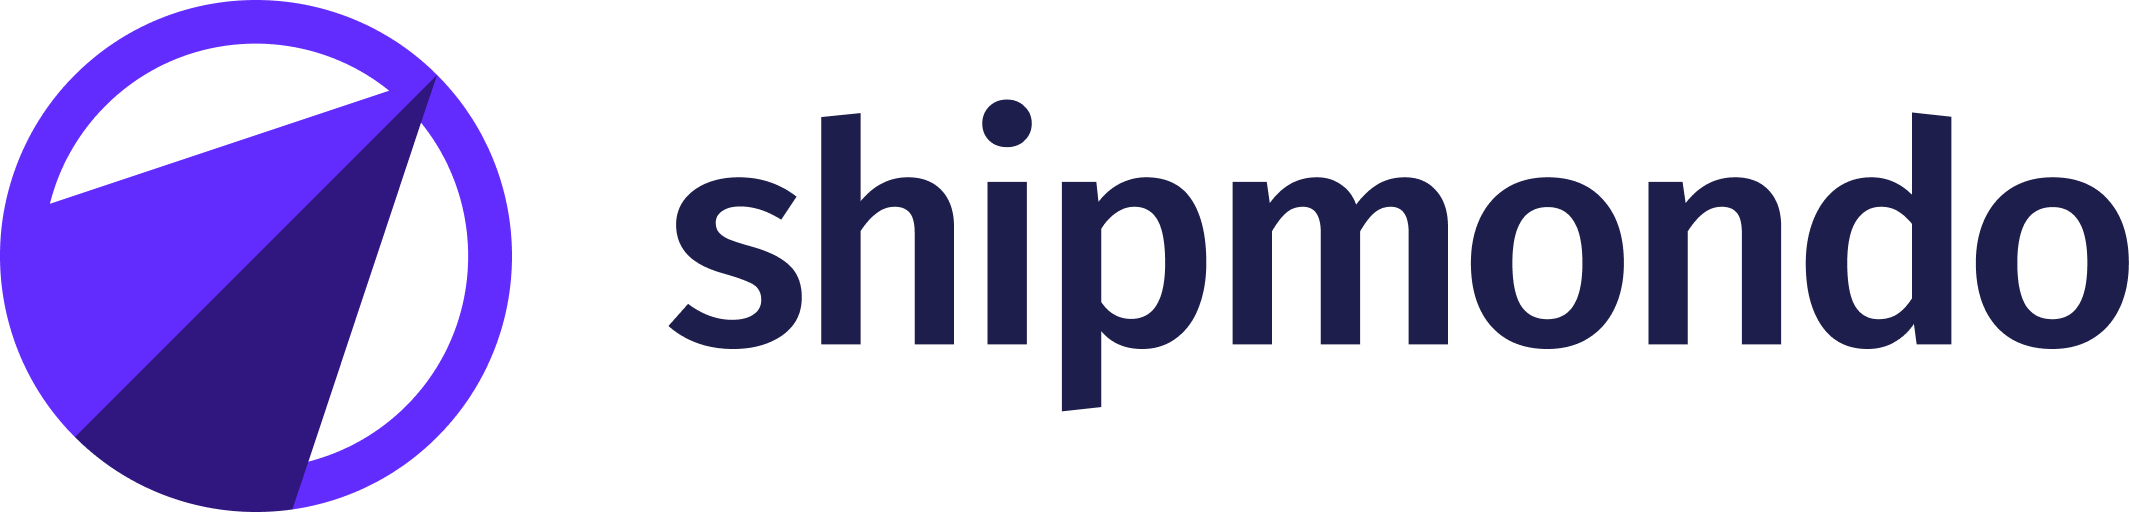 Shipmondo logo